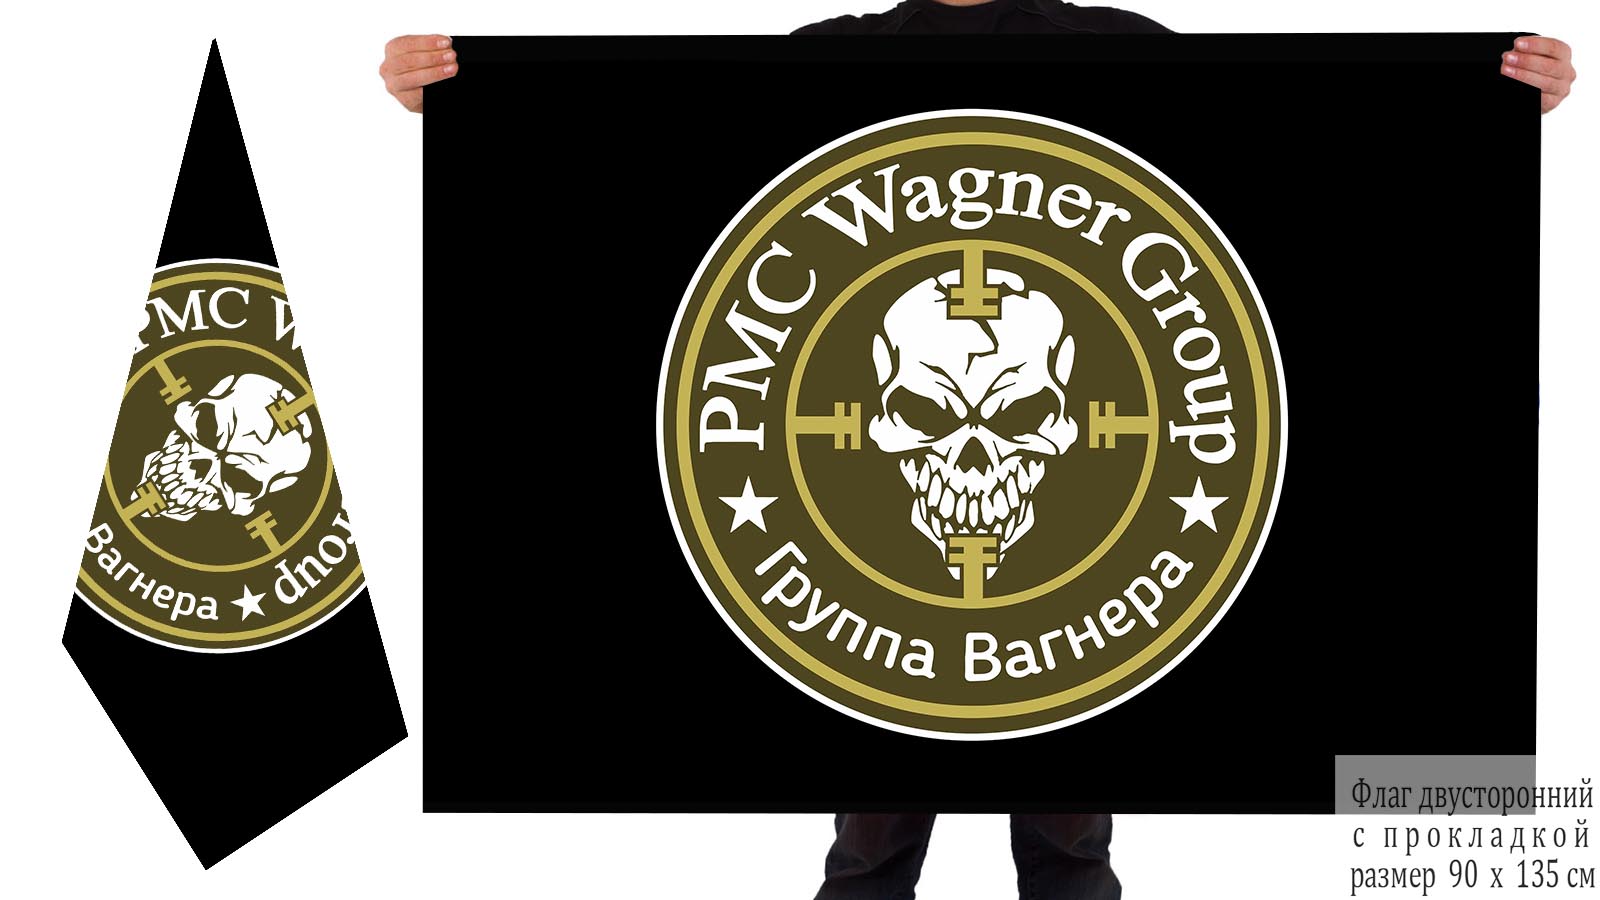 Двусторонний флаг PMC Wagner Group